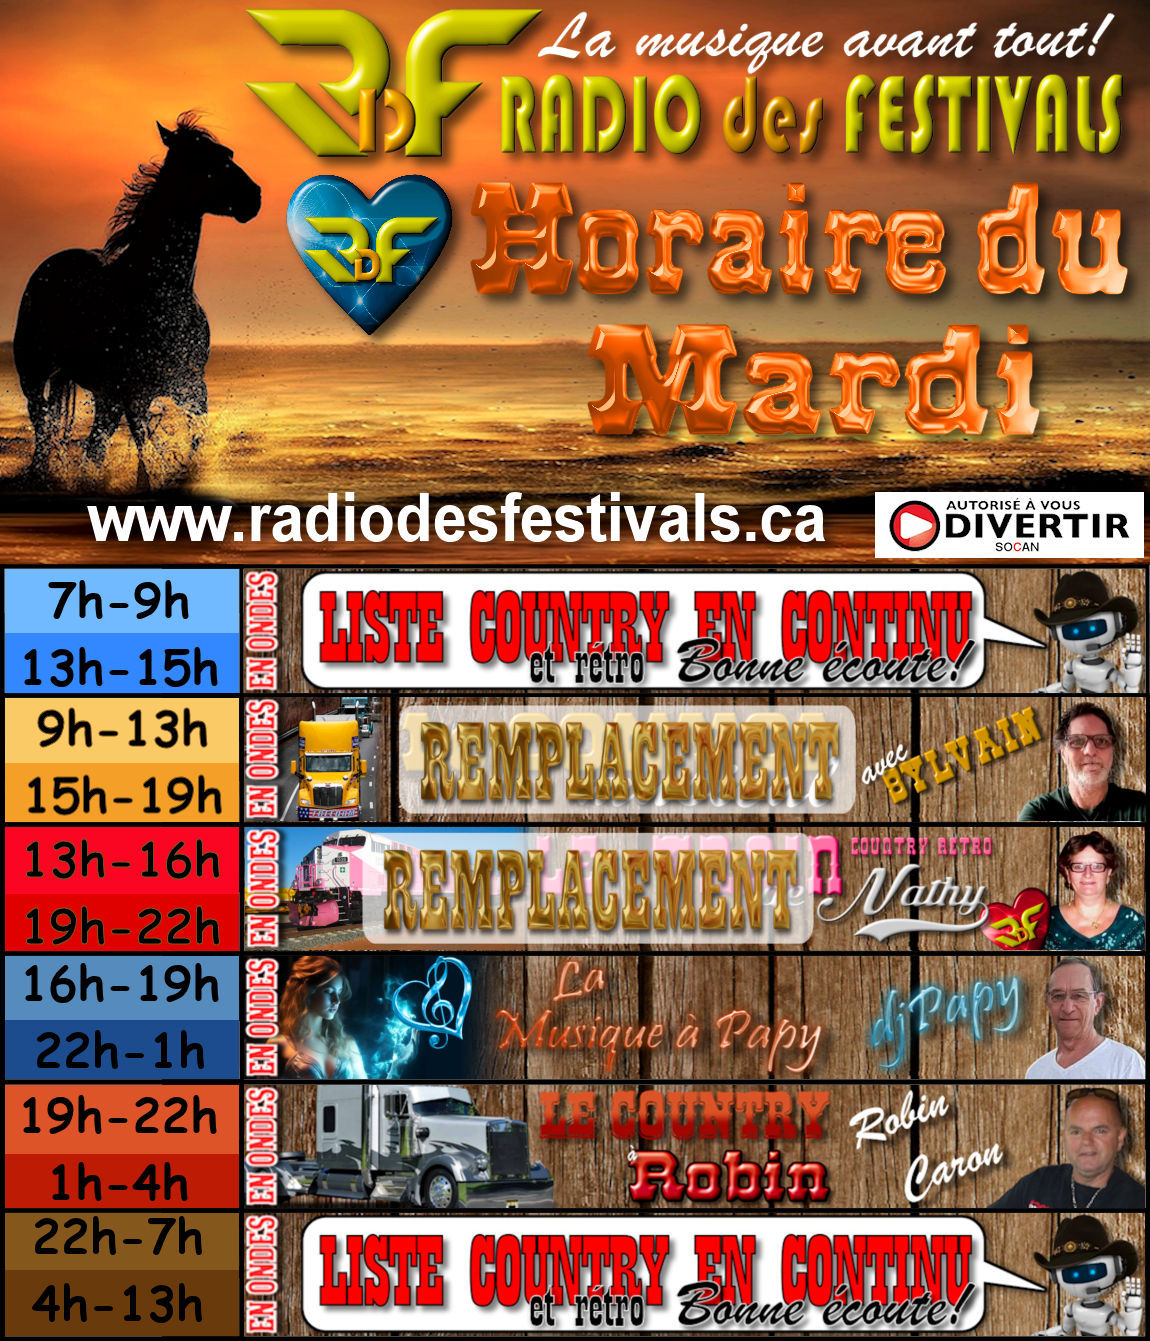 horaire du Mardi de la radio des festivals